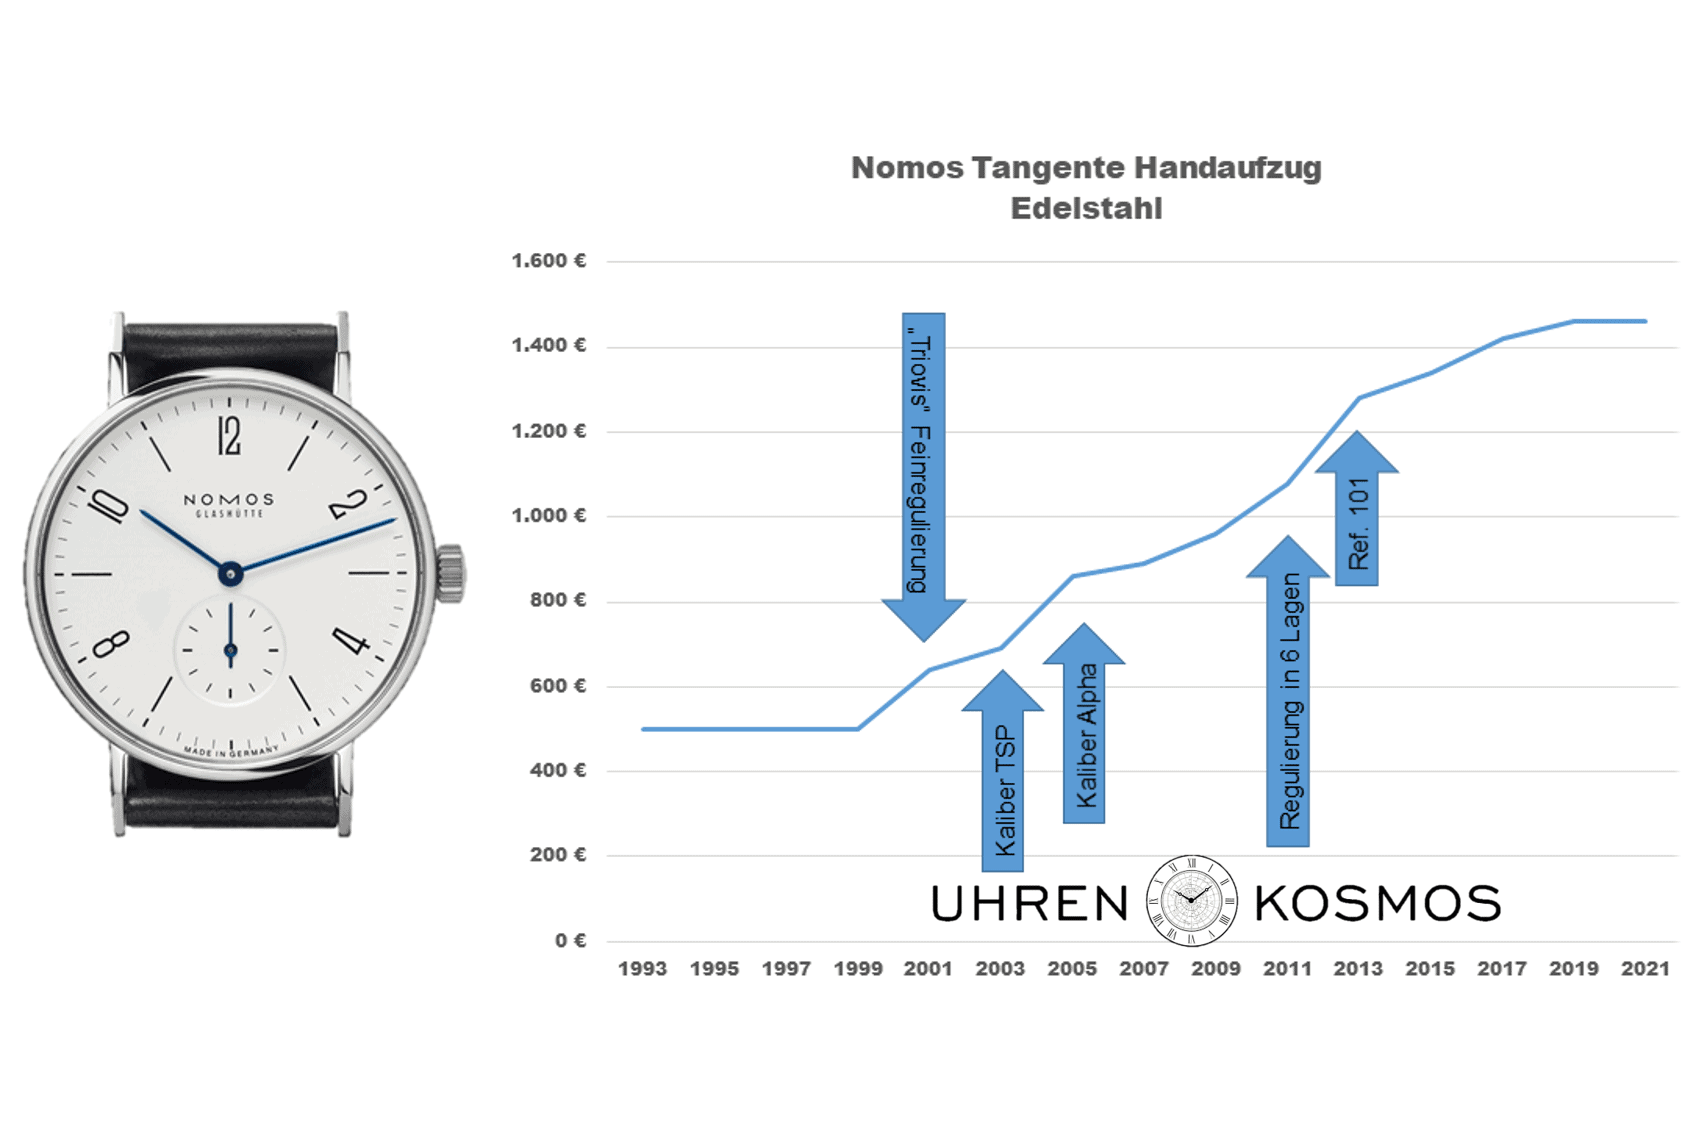 Entwicklung des Preises der Nomos Tangente in Edelstahl von 1993 bis heute